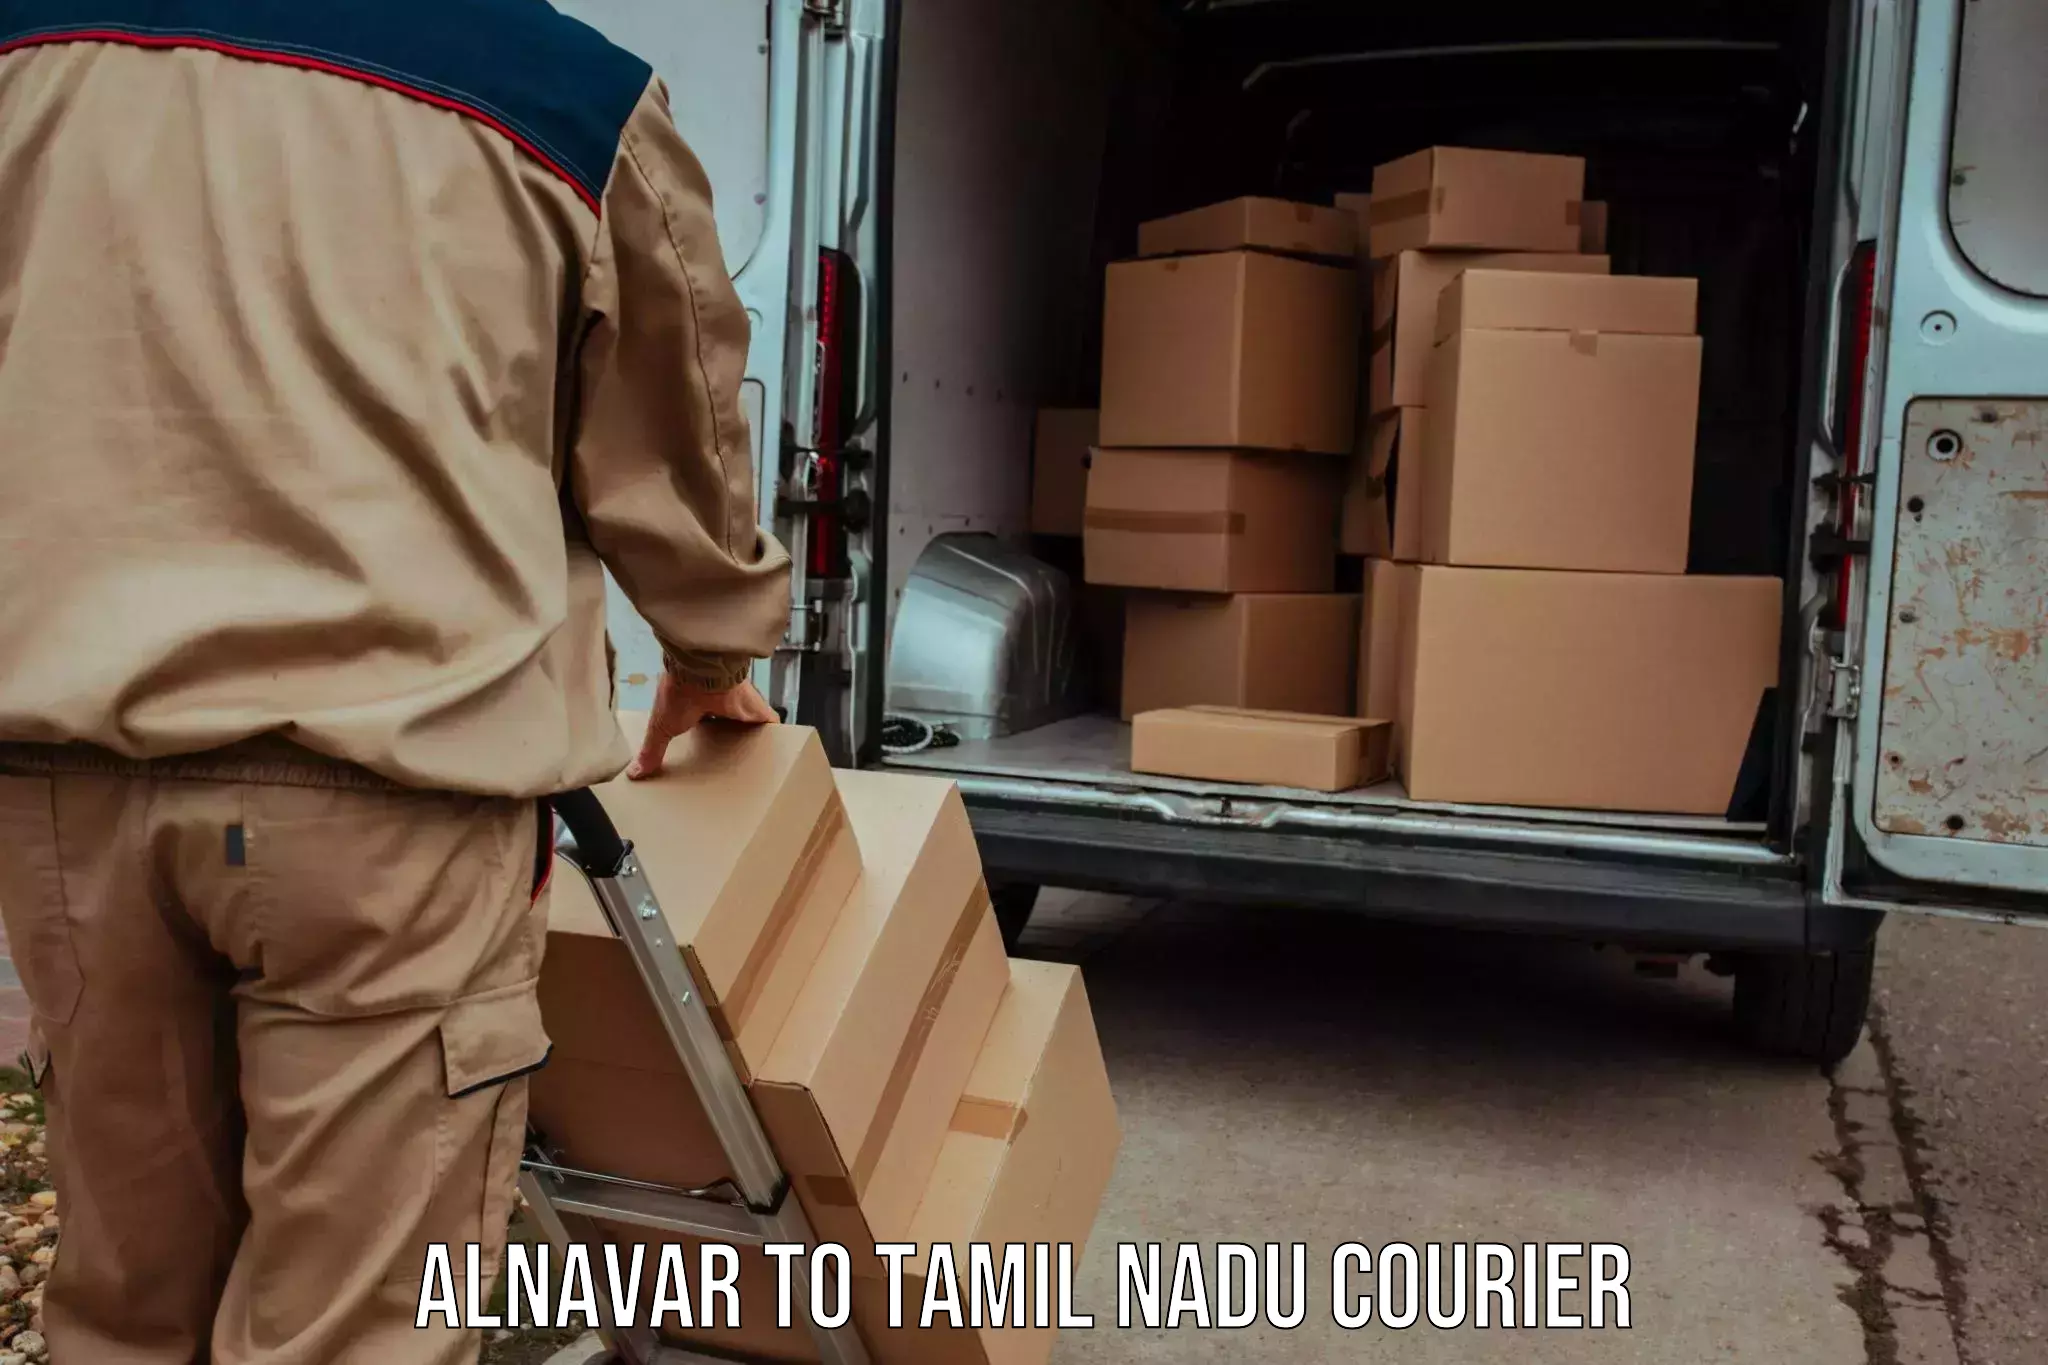 Subscription-based courier Alnavar to Tamil Nadu